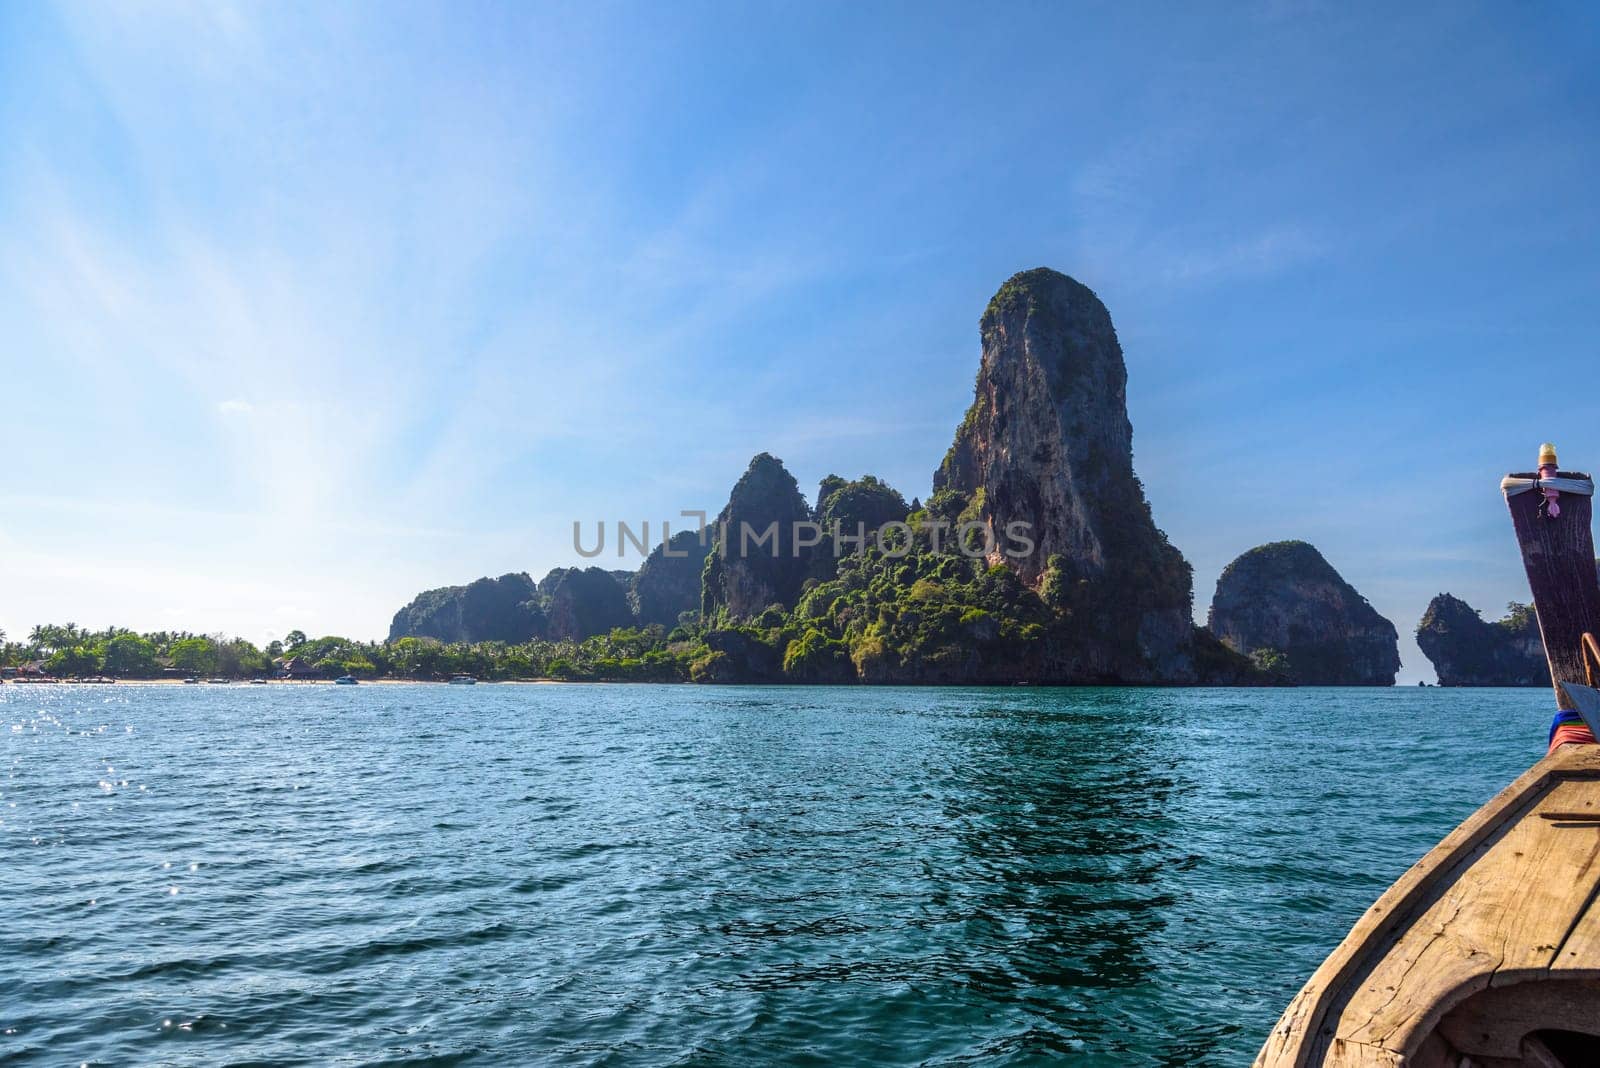 Cliff rock in azure water, Ko Rang Nok, Ao Phra Nang Beach, Ao Nang, Krabi, Thailand.